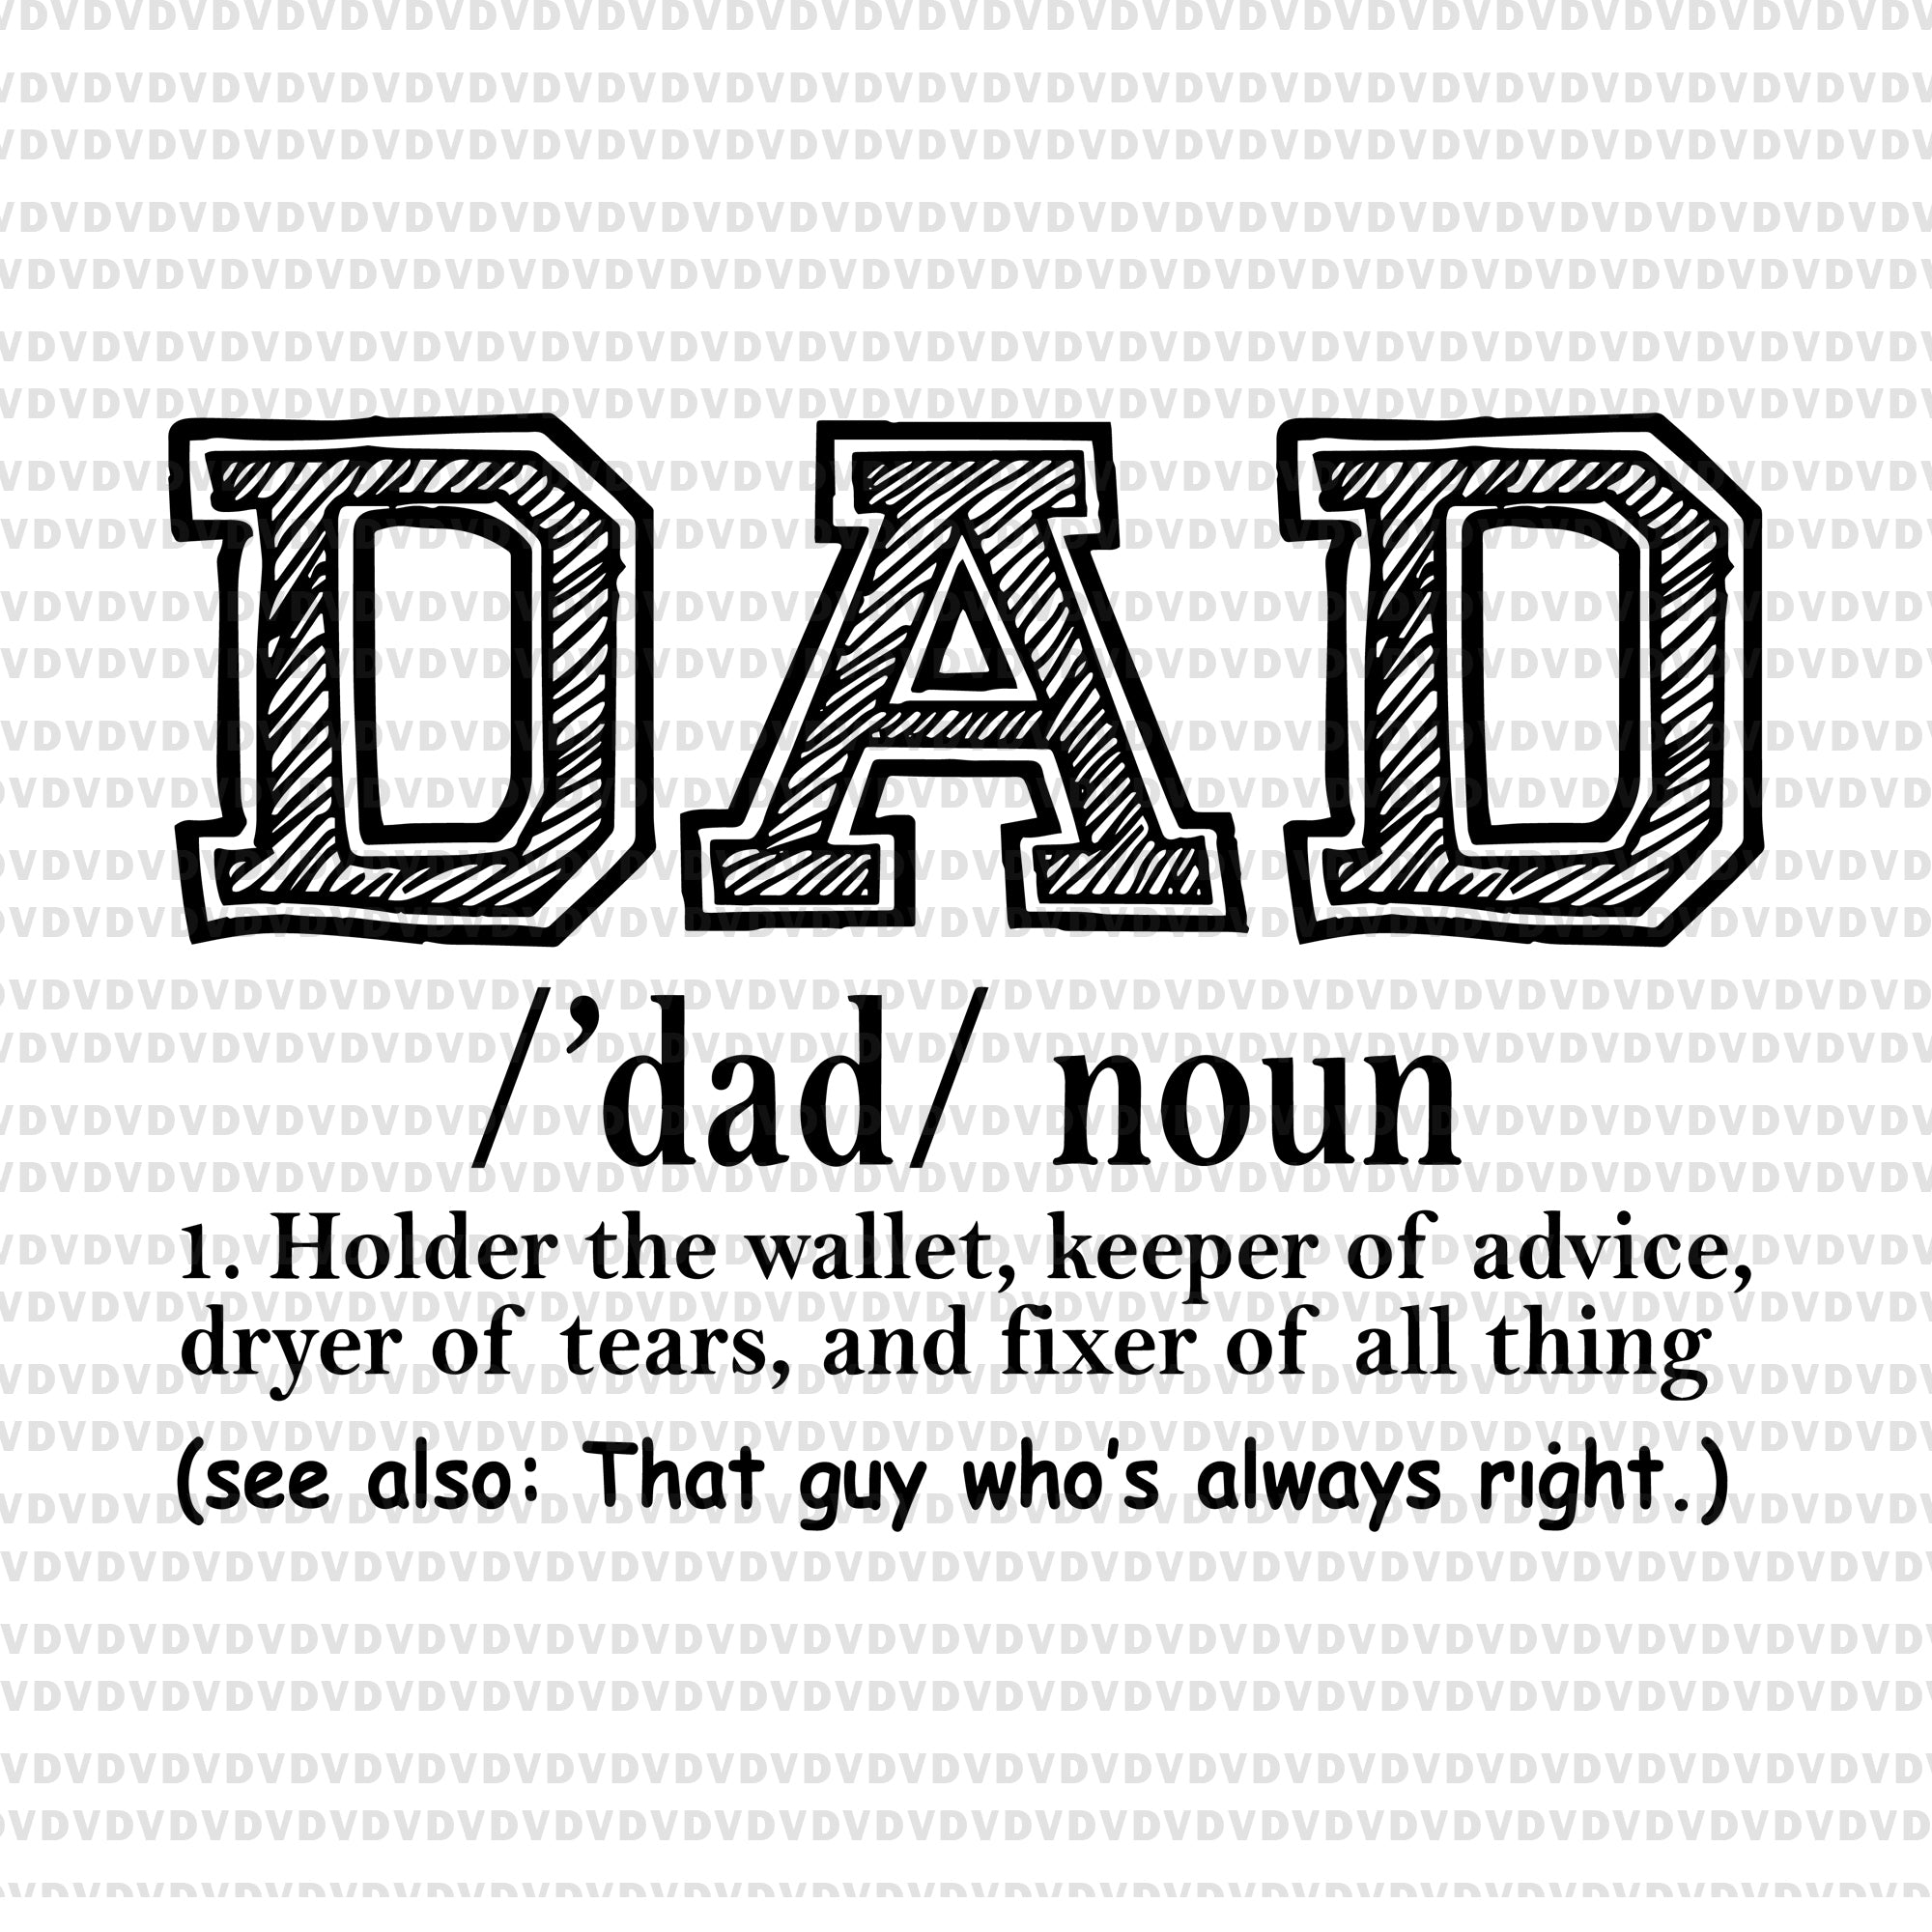 Dad noun svg. dad noun png, father’s day svg, father day png, father day, father day design t shirt design template Dad noun svg. dad noun png, father’s day svg, father day, father svg, eps, png, dxf